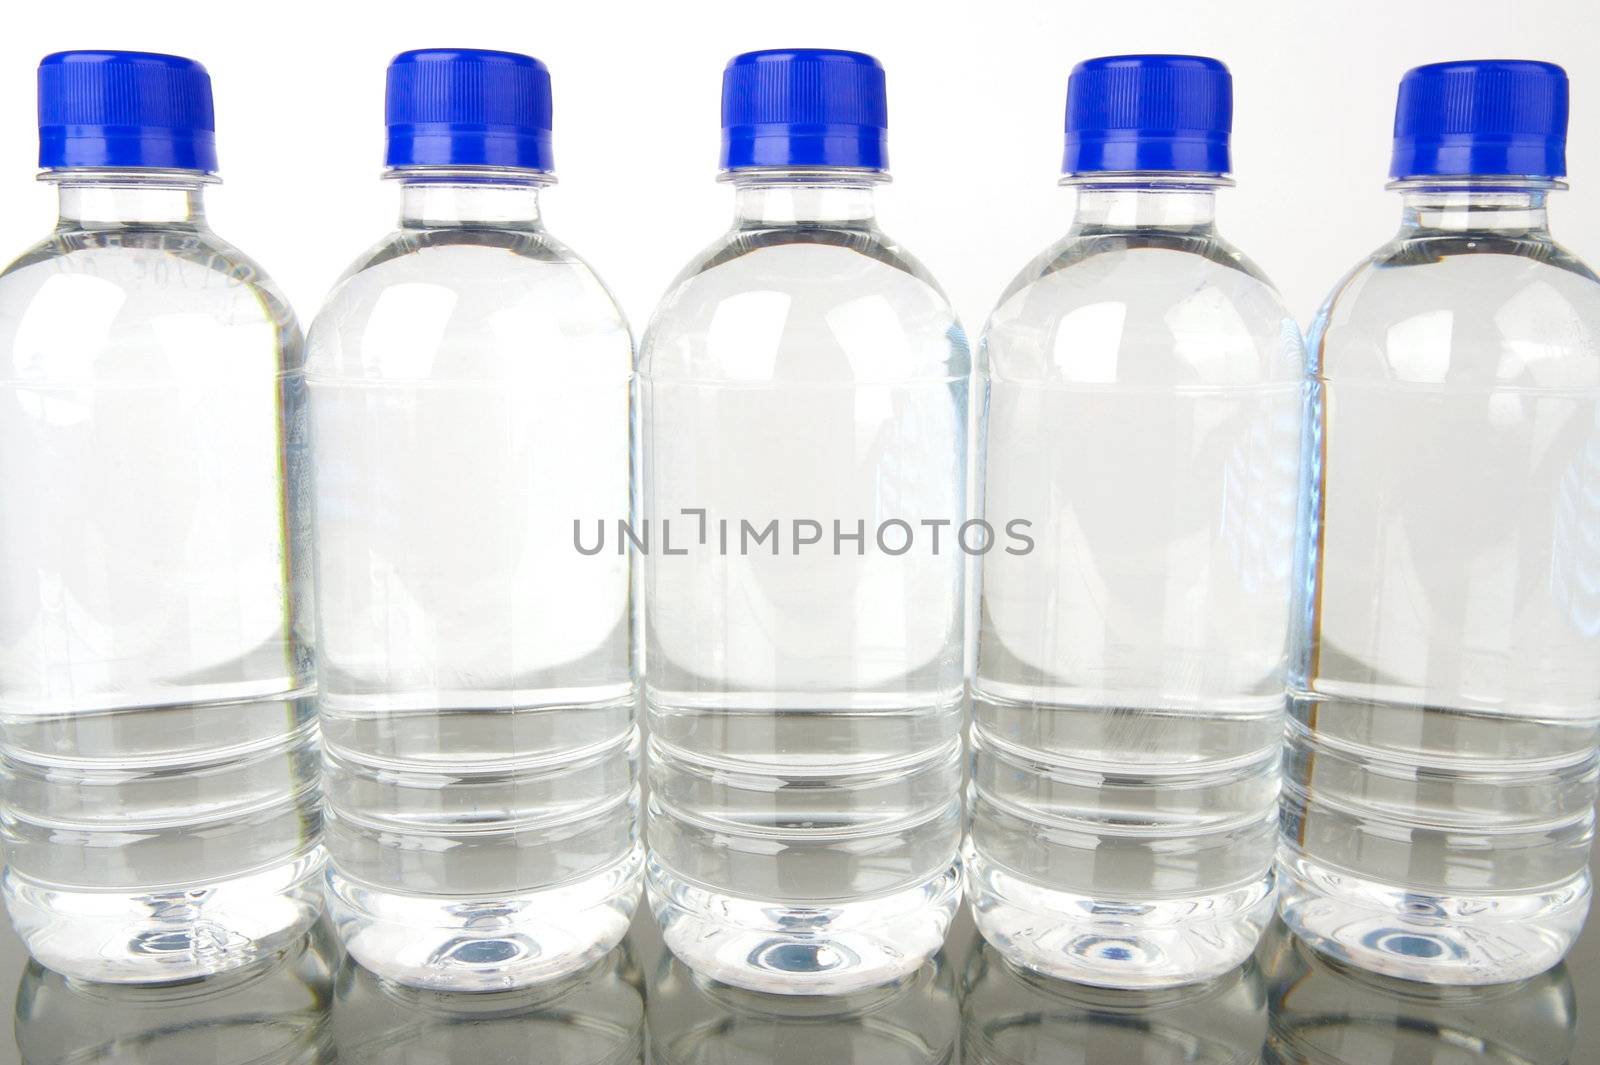 Bottles of bottled water isolated